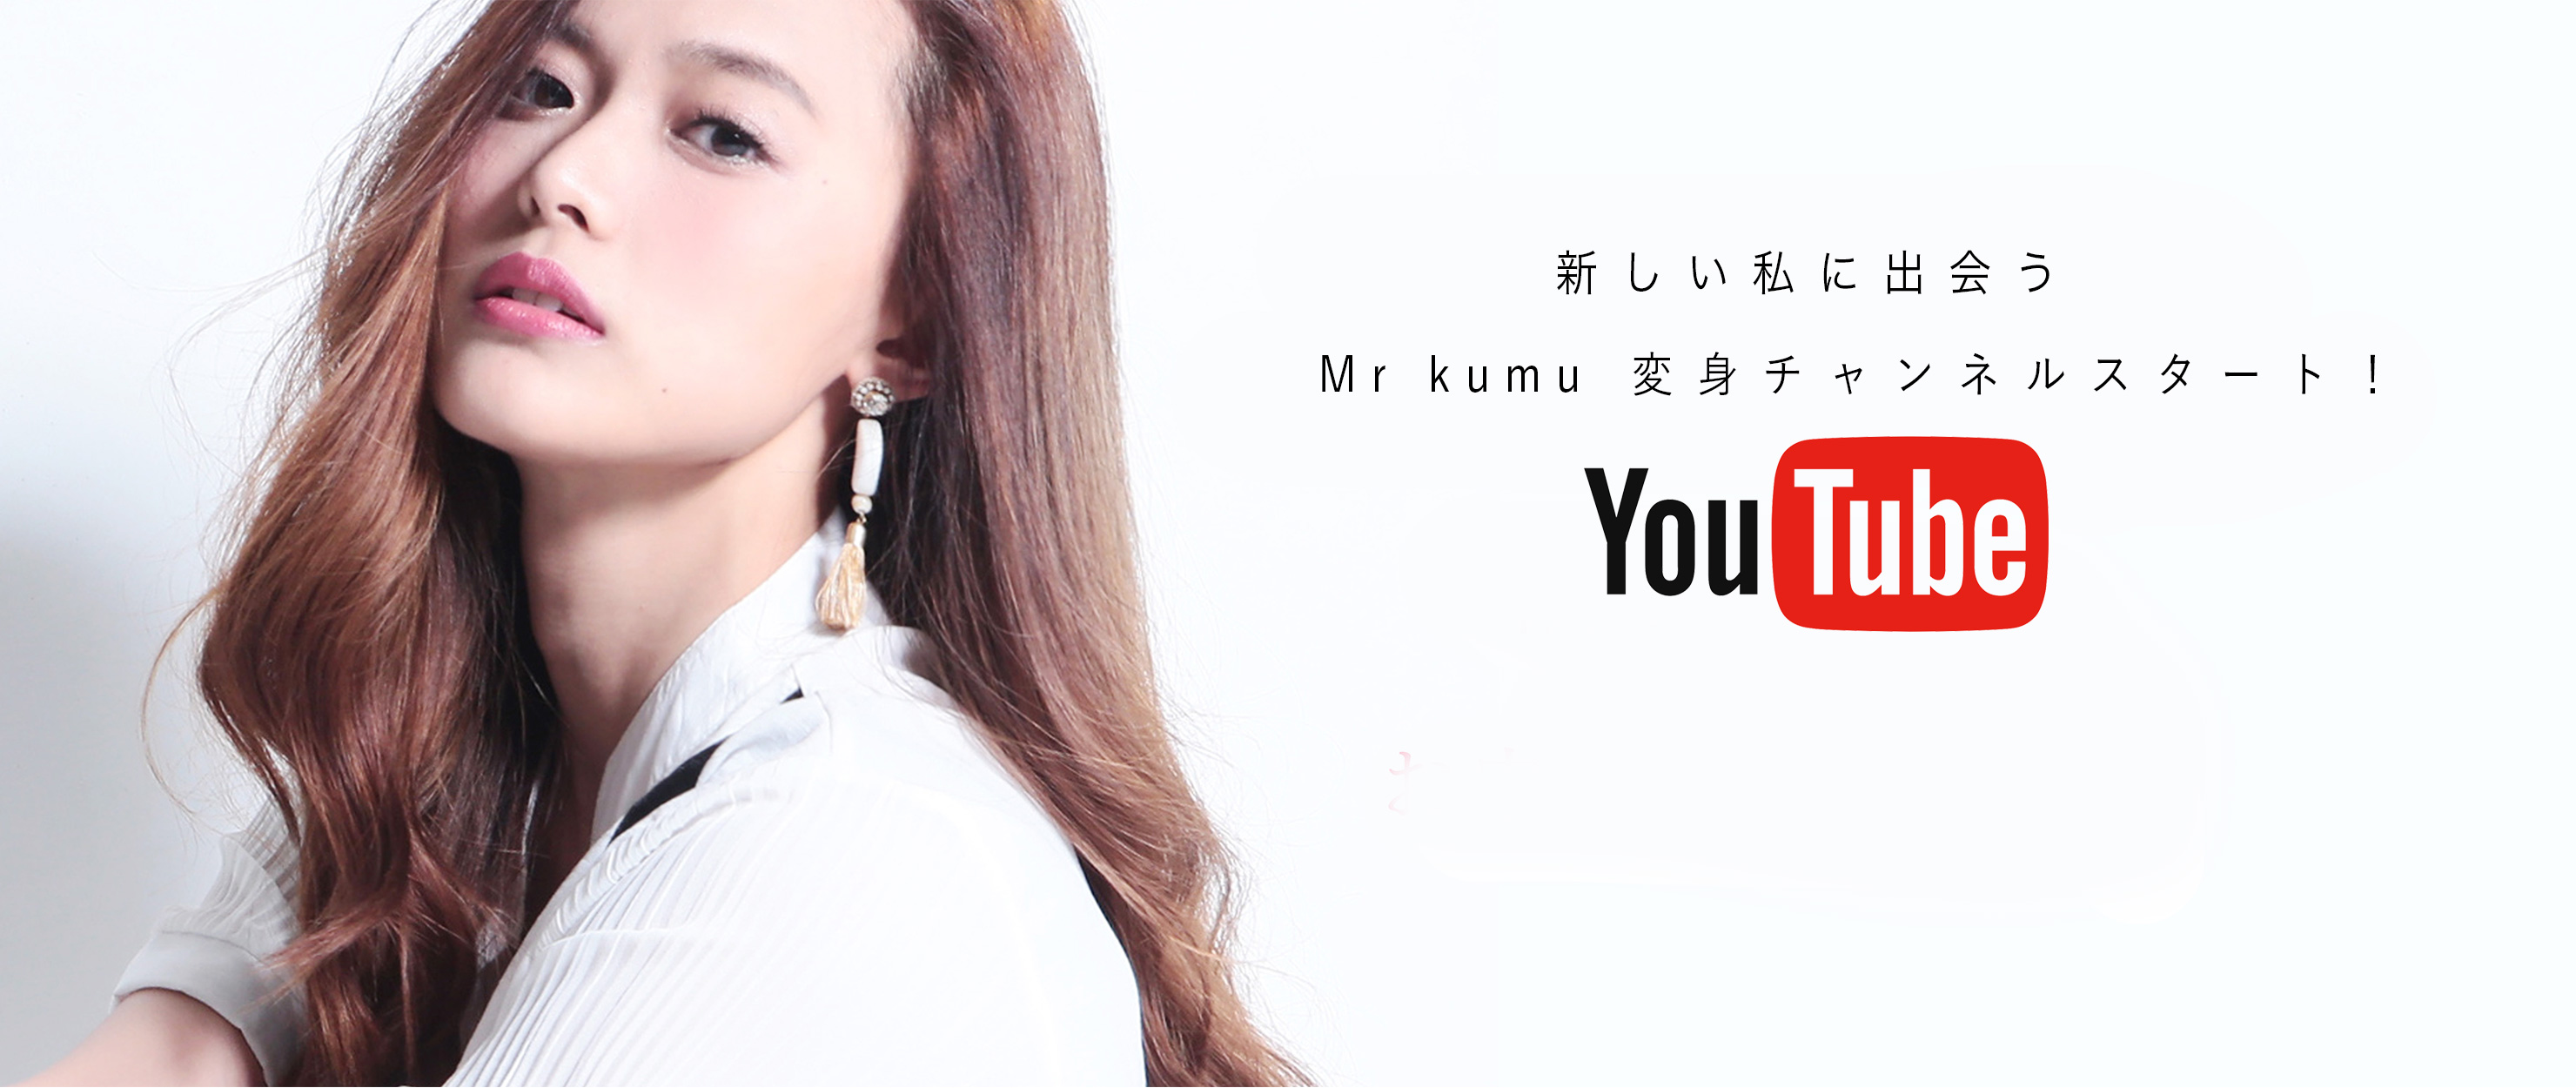 新しい私に出会う Mr kumu 変身チャンネルスタート! YouTube